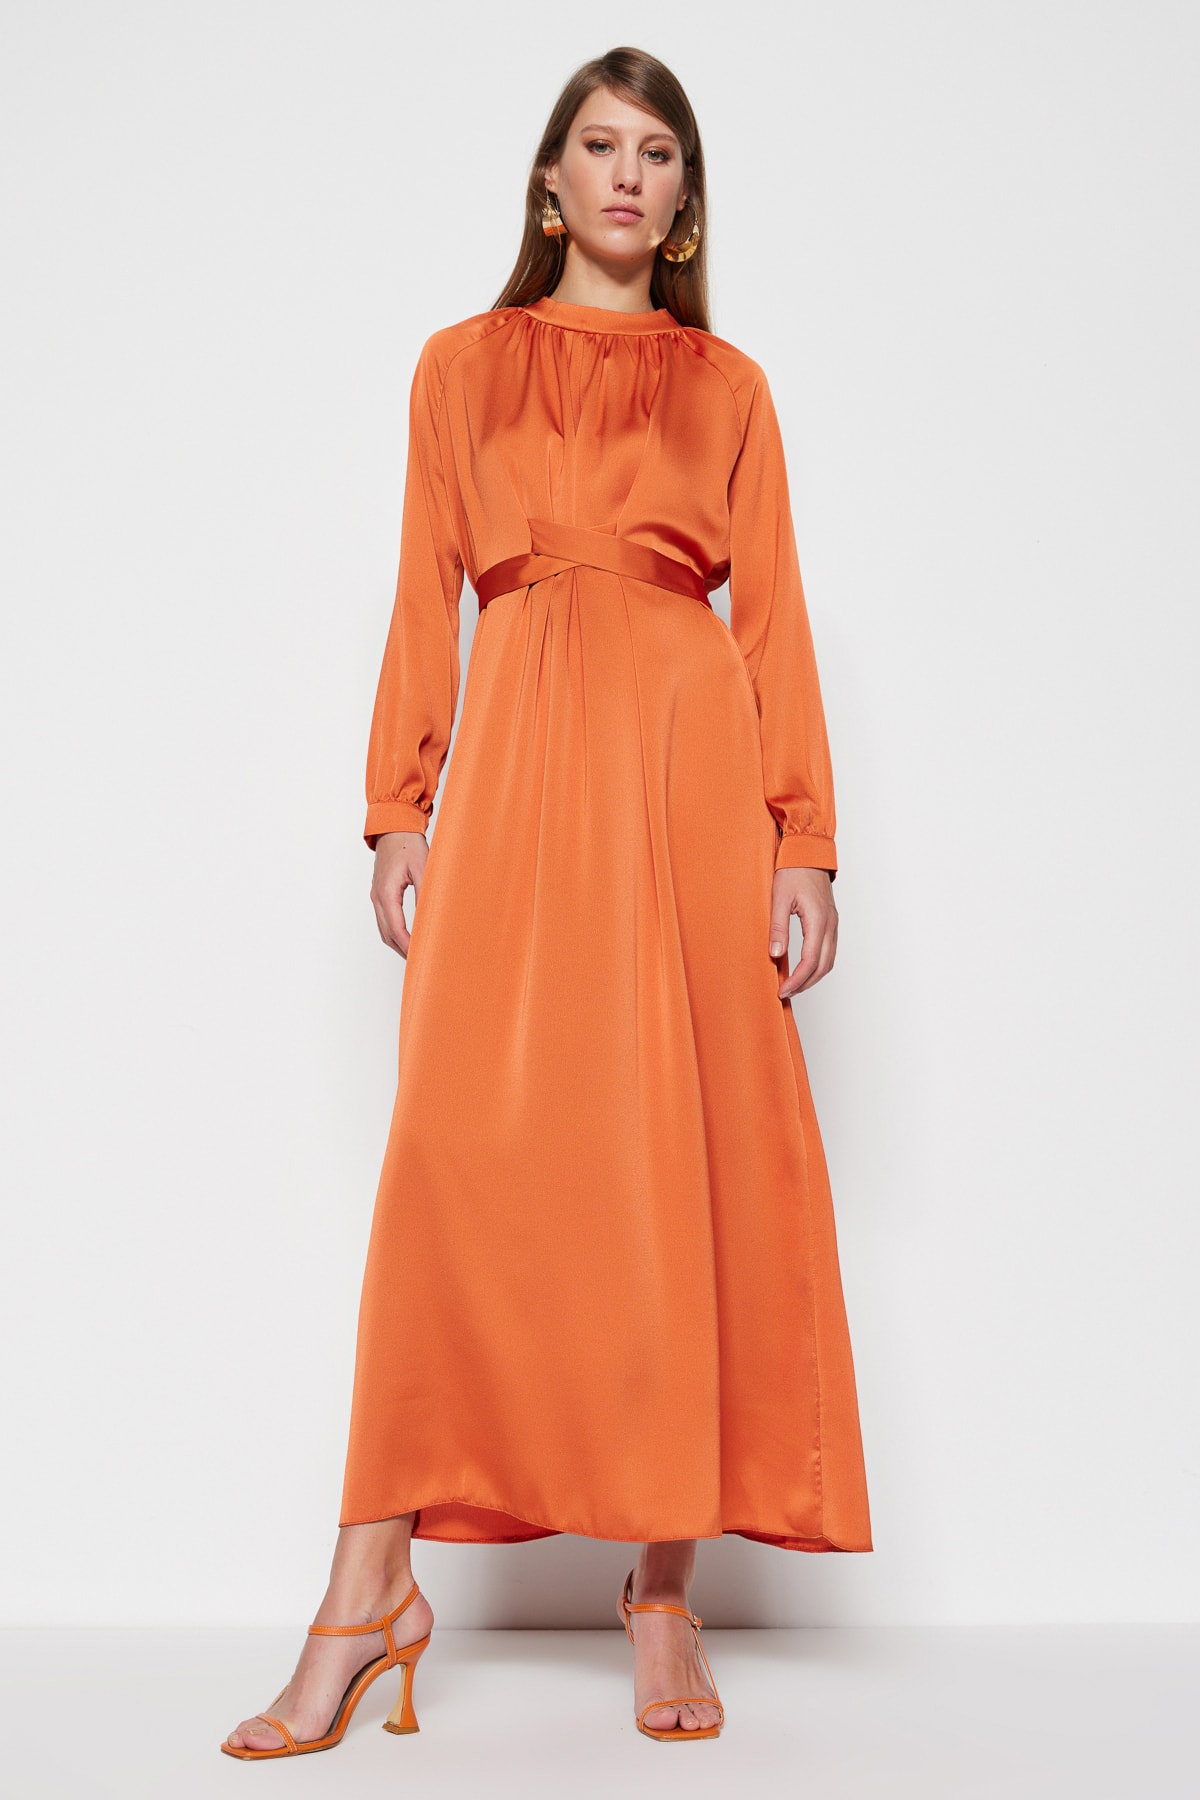 блузка trendyol кружевная оранжевый Вечернее платье - Оранжевое - Макси Trendyol Modest, оранжевый